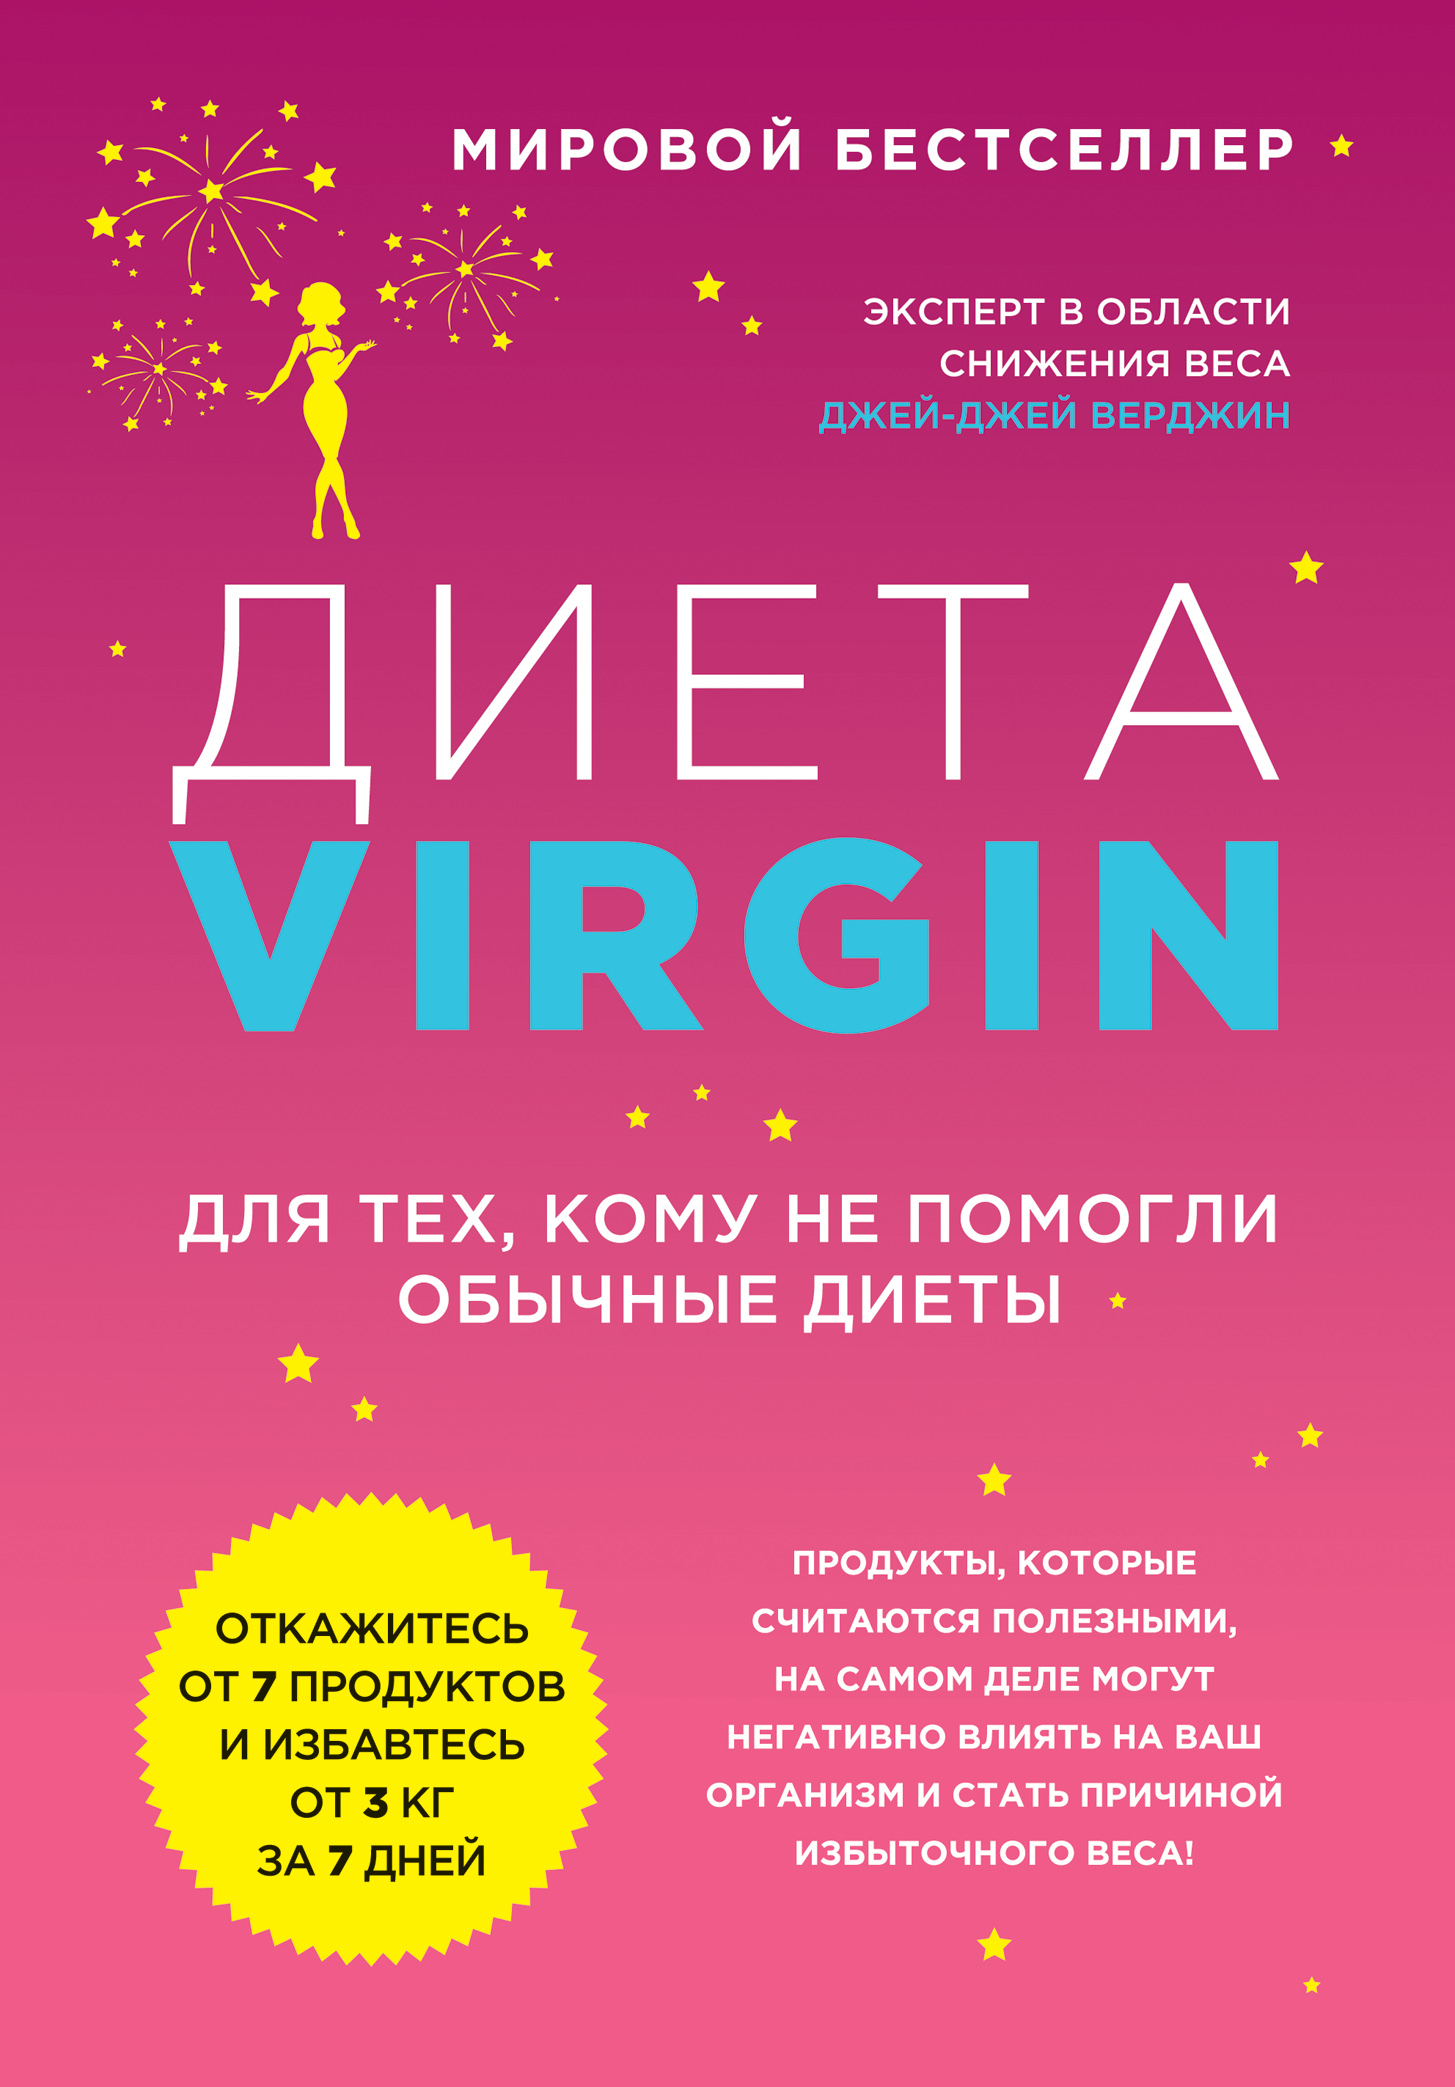  Virgin